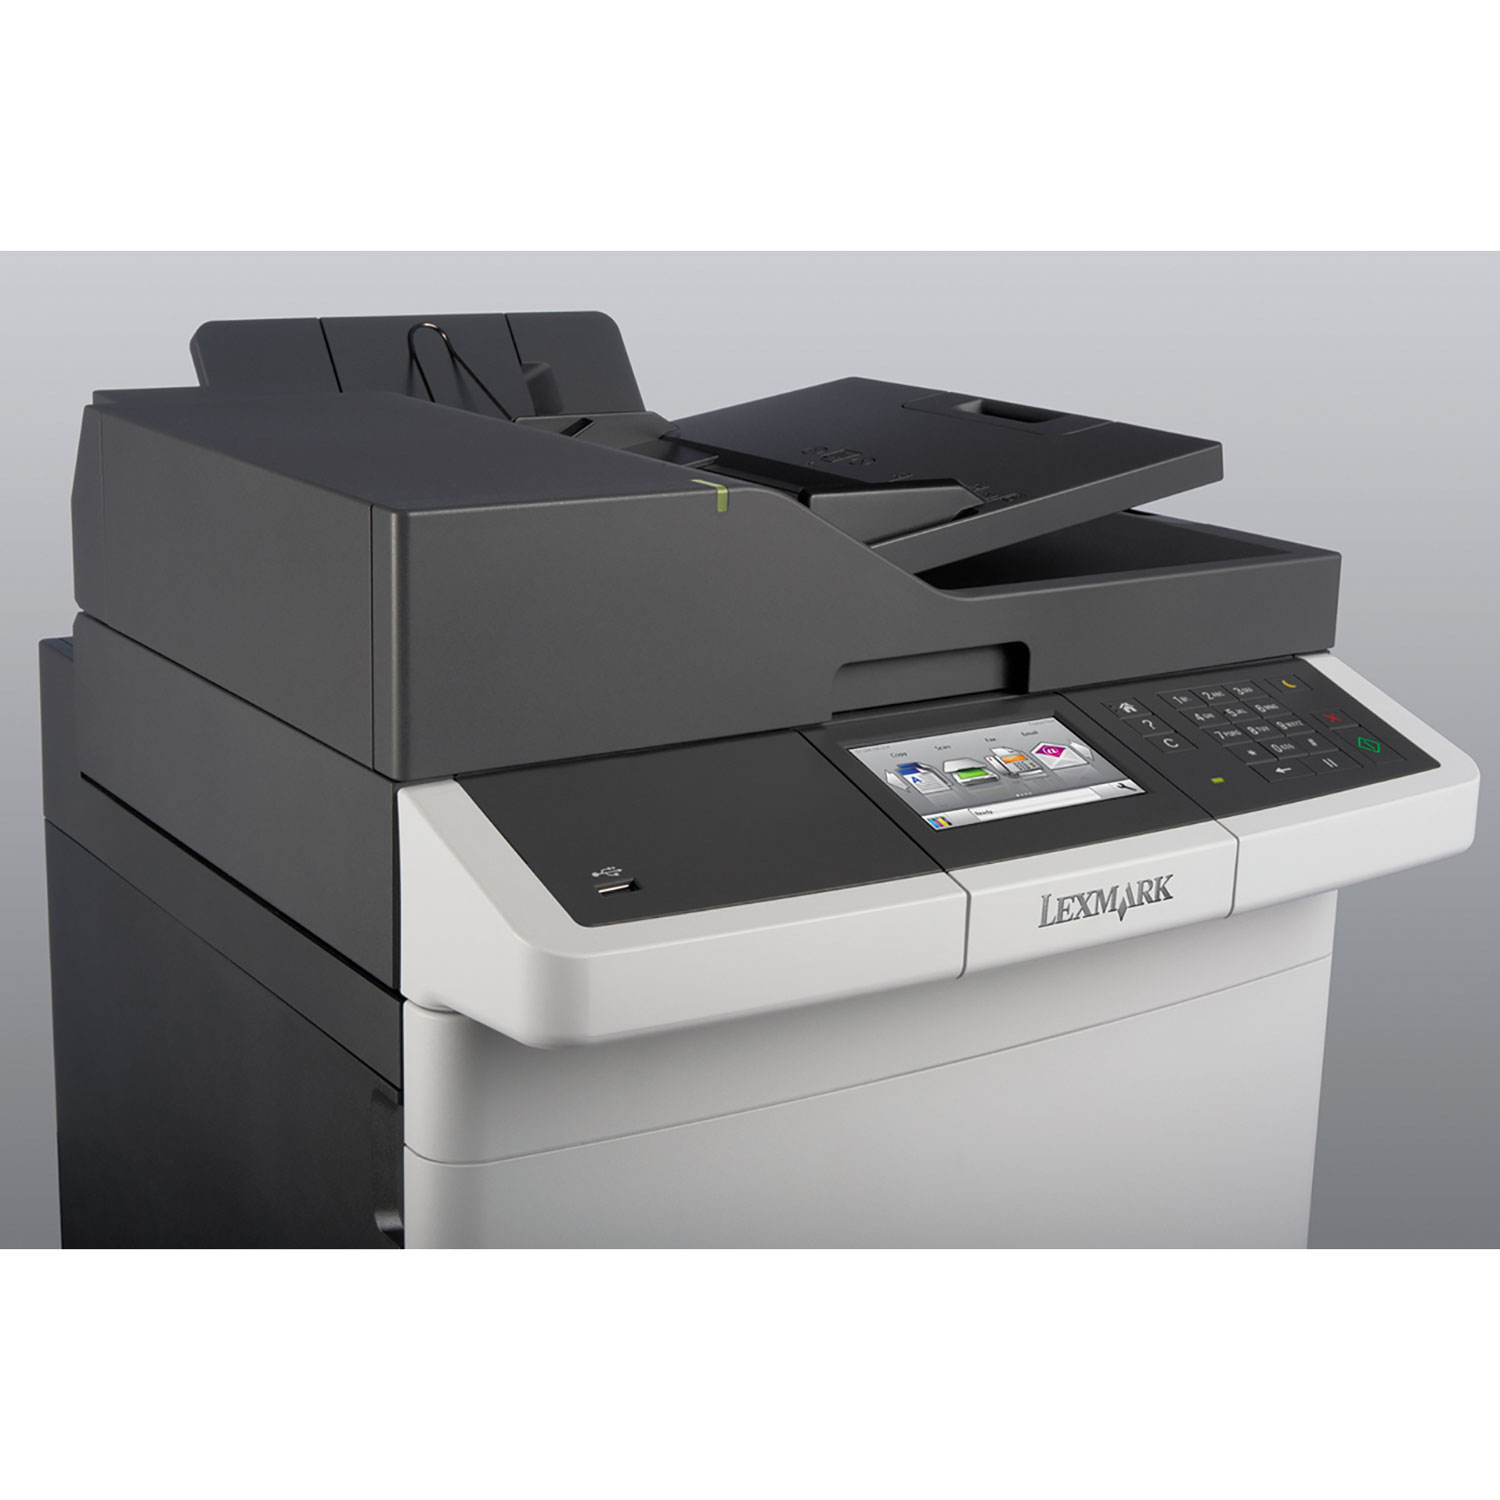 CX417de, Wireless, Copy/Fax/Print/Scan